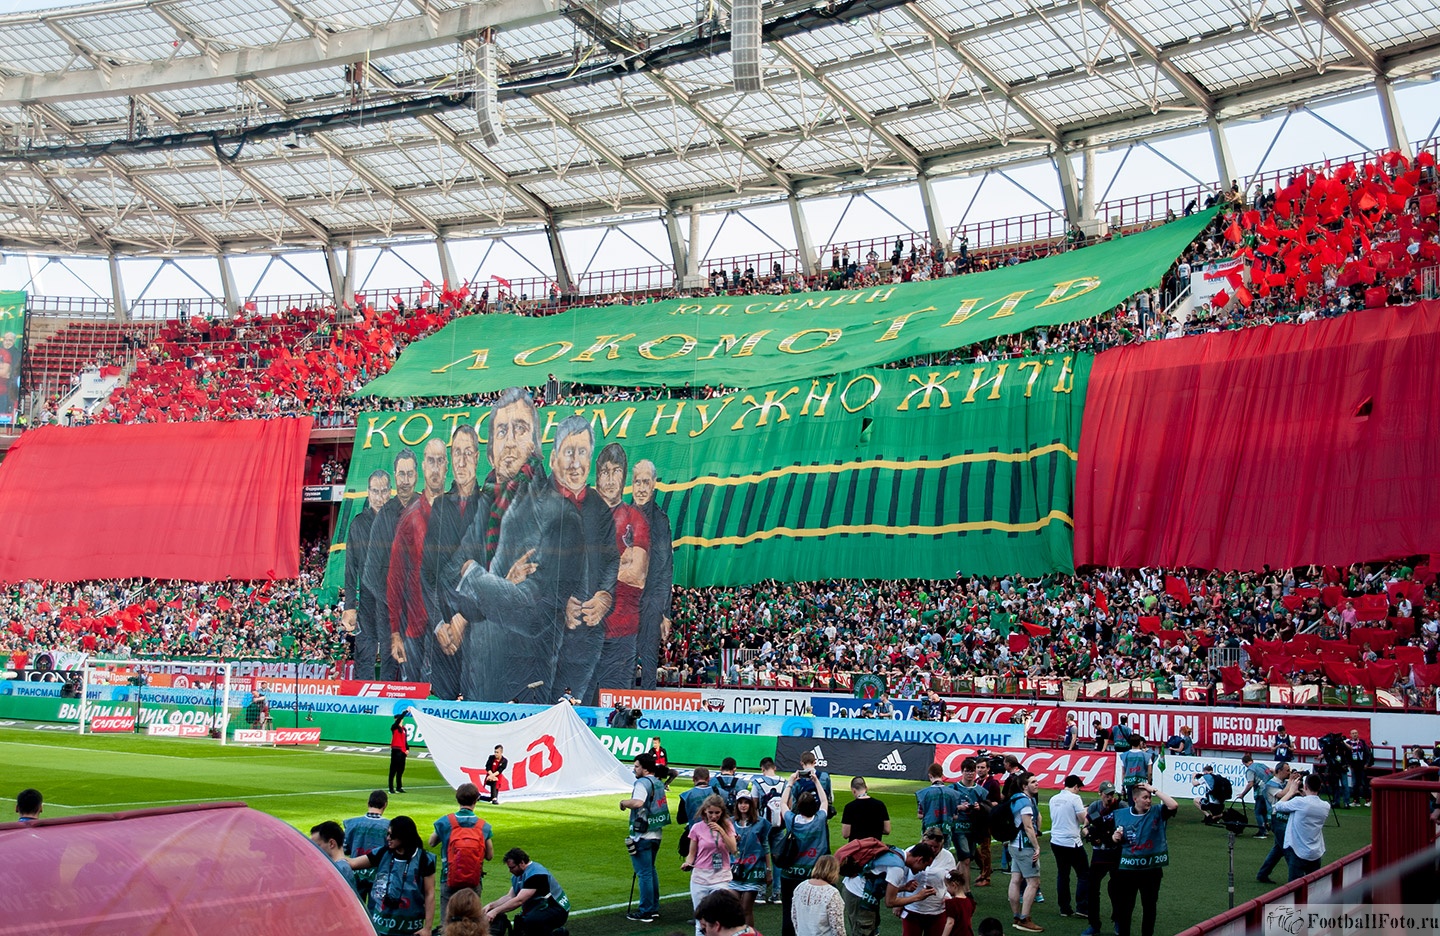 Южная трибуна перед золотым матчем  ФК Локомотив Москва - ФК Зенит Санкт-Петербург 5 мая 2018 года.